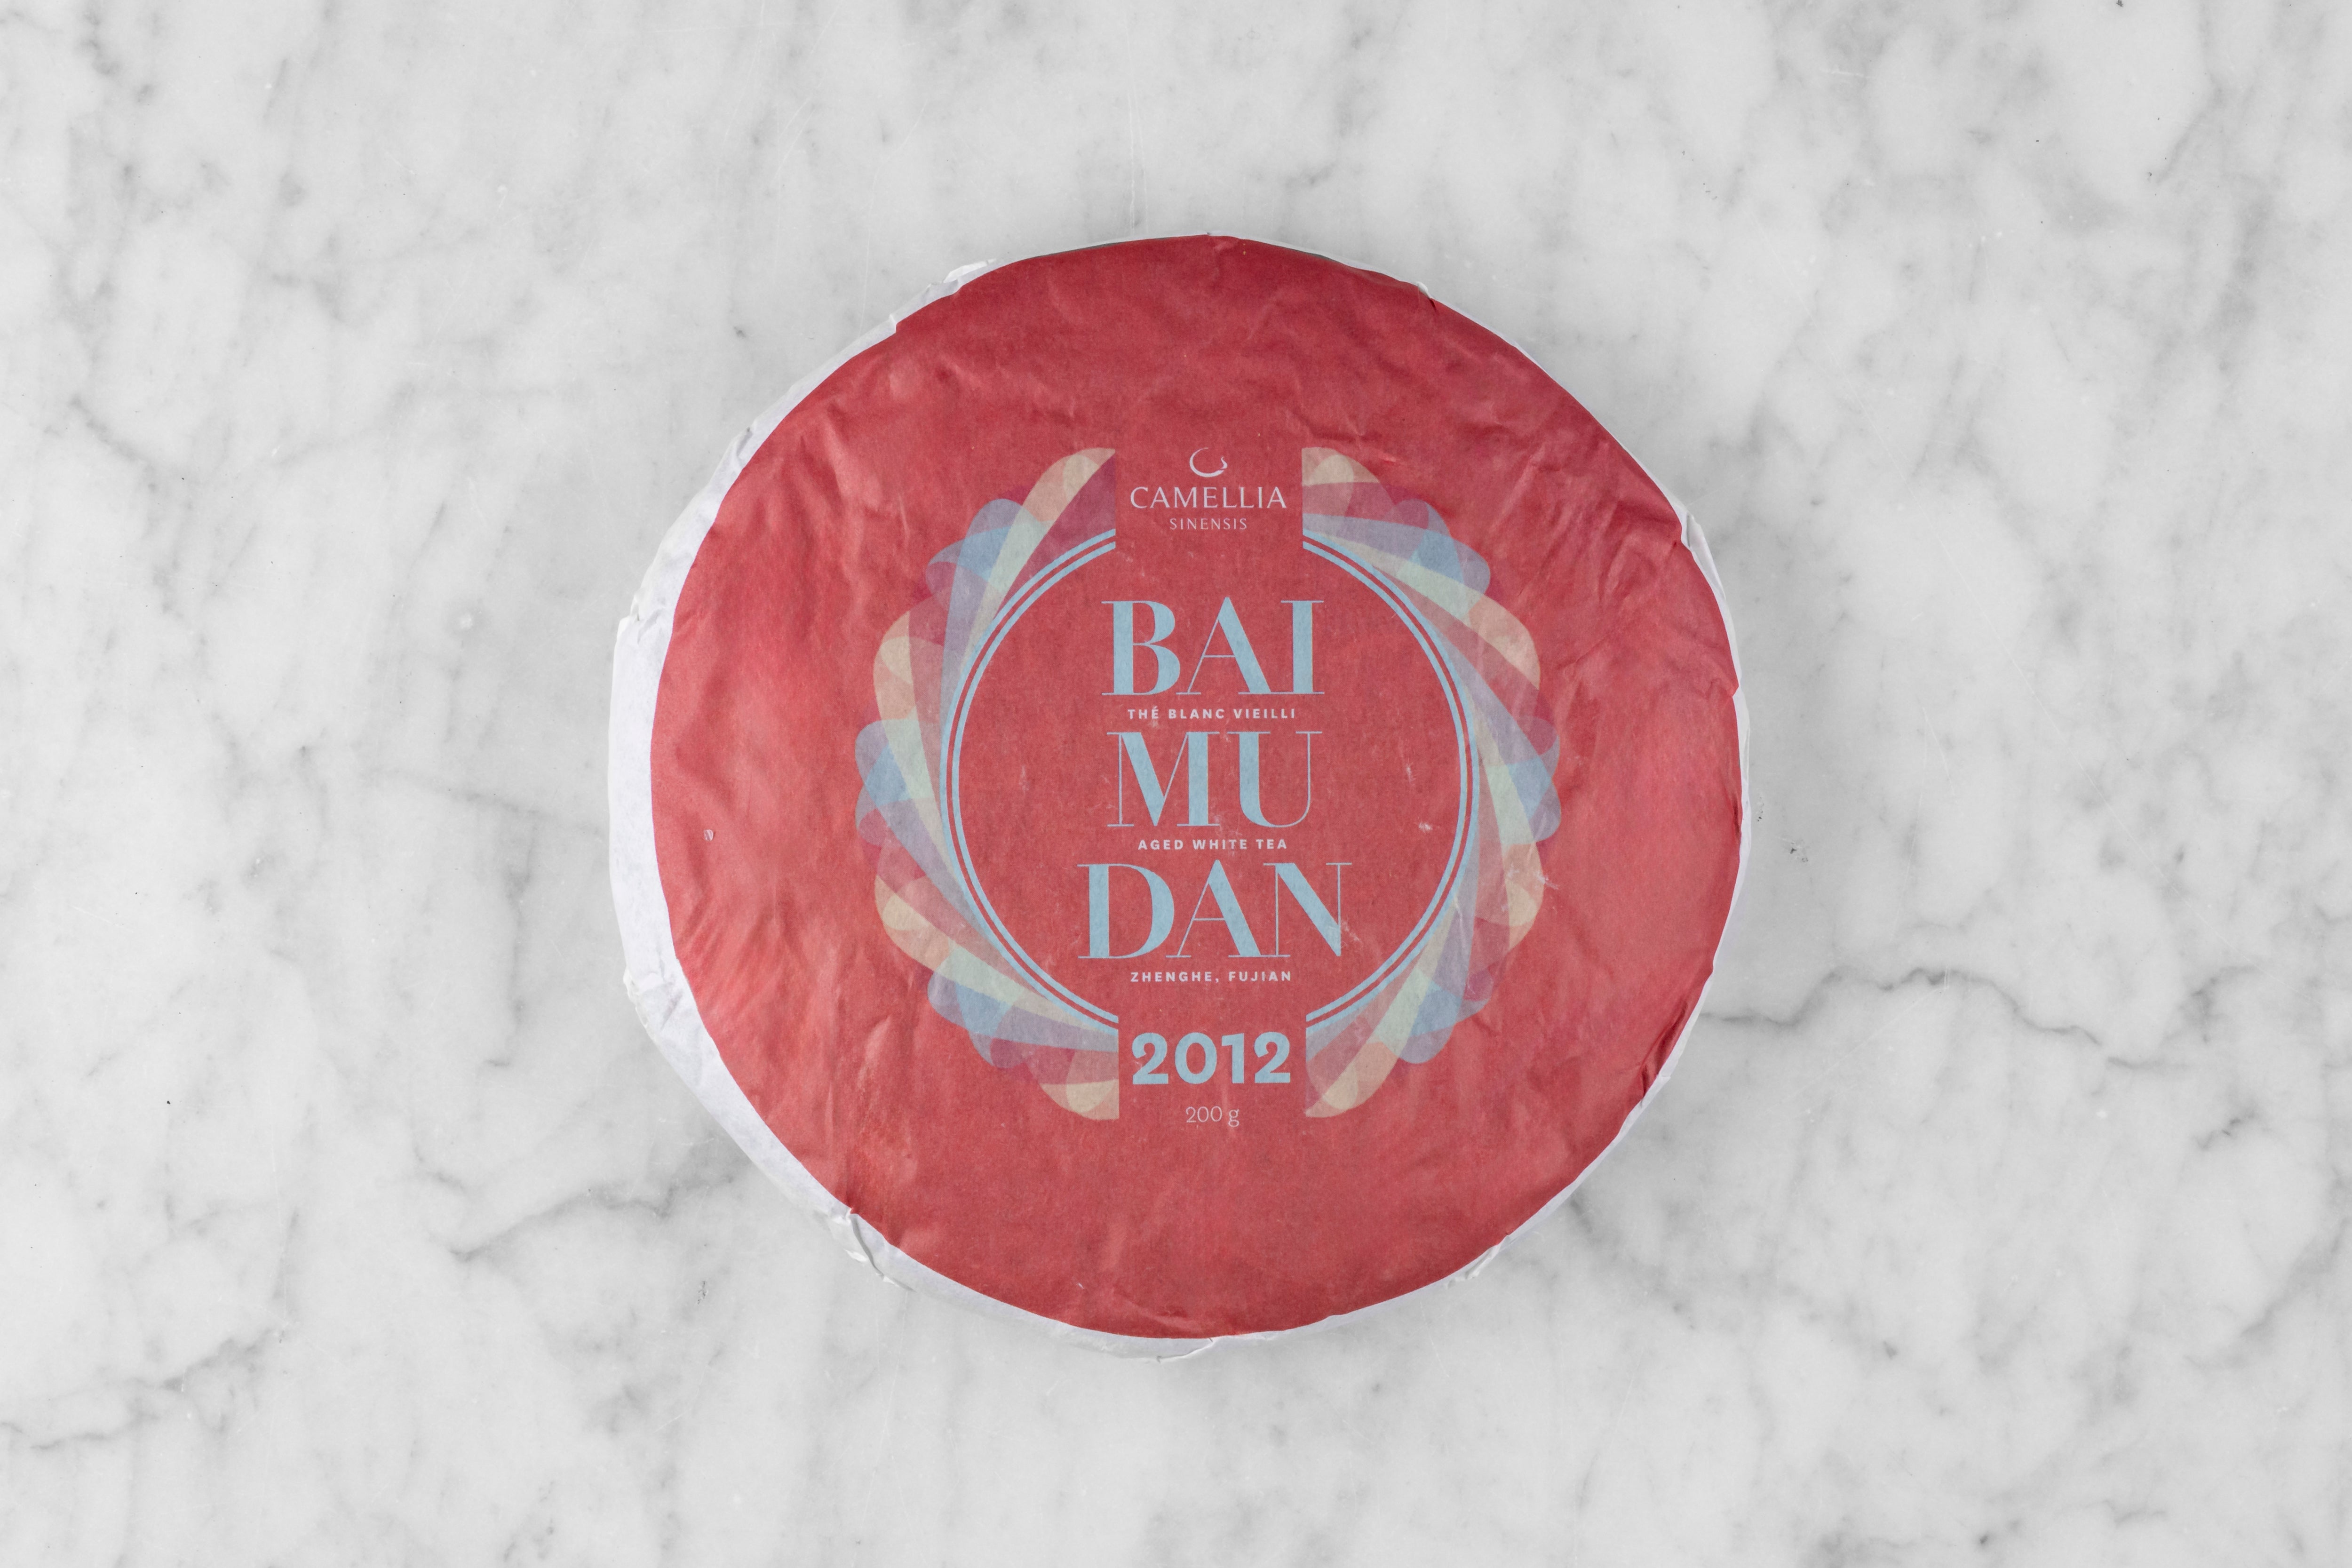 wrapped cake of 2012 Bai Mu Dan sheng pu er aged tea